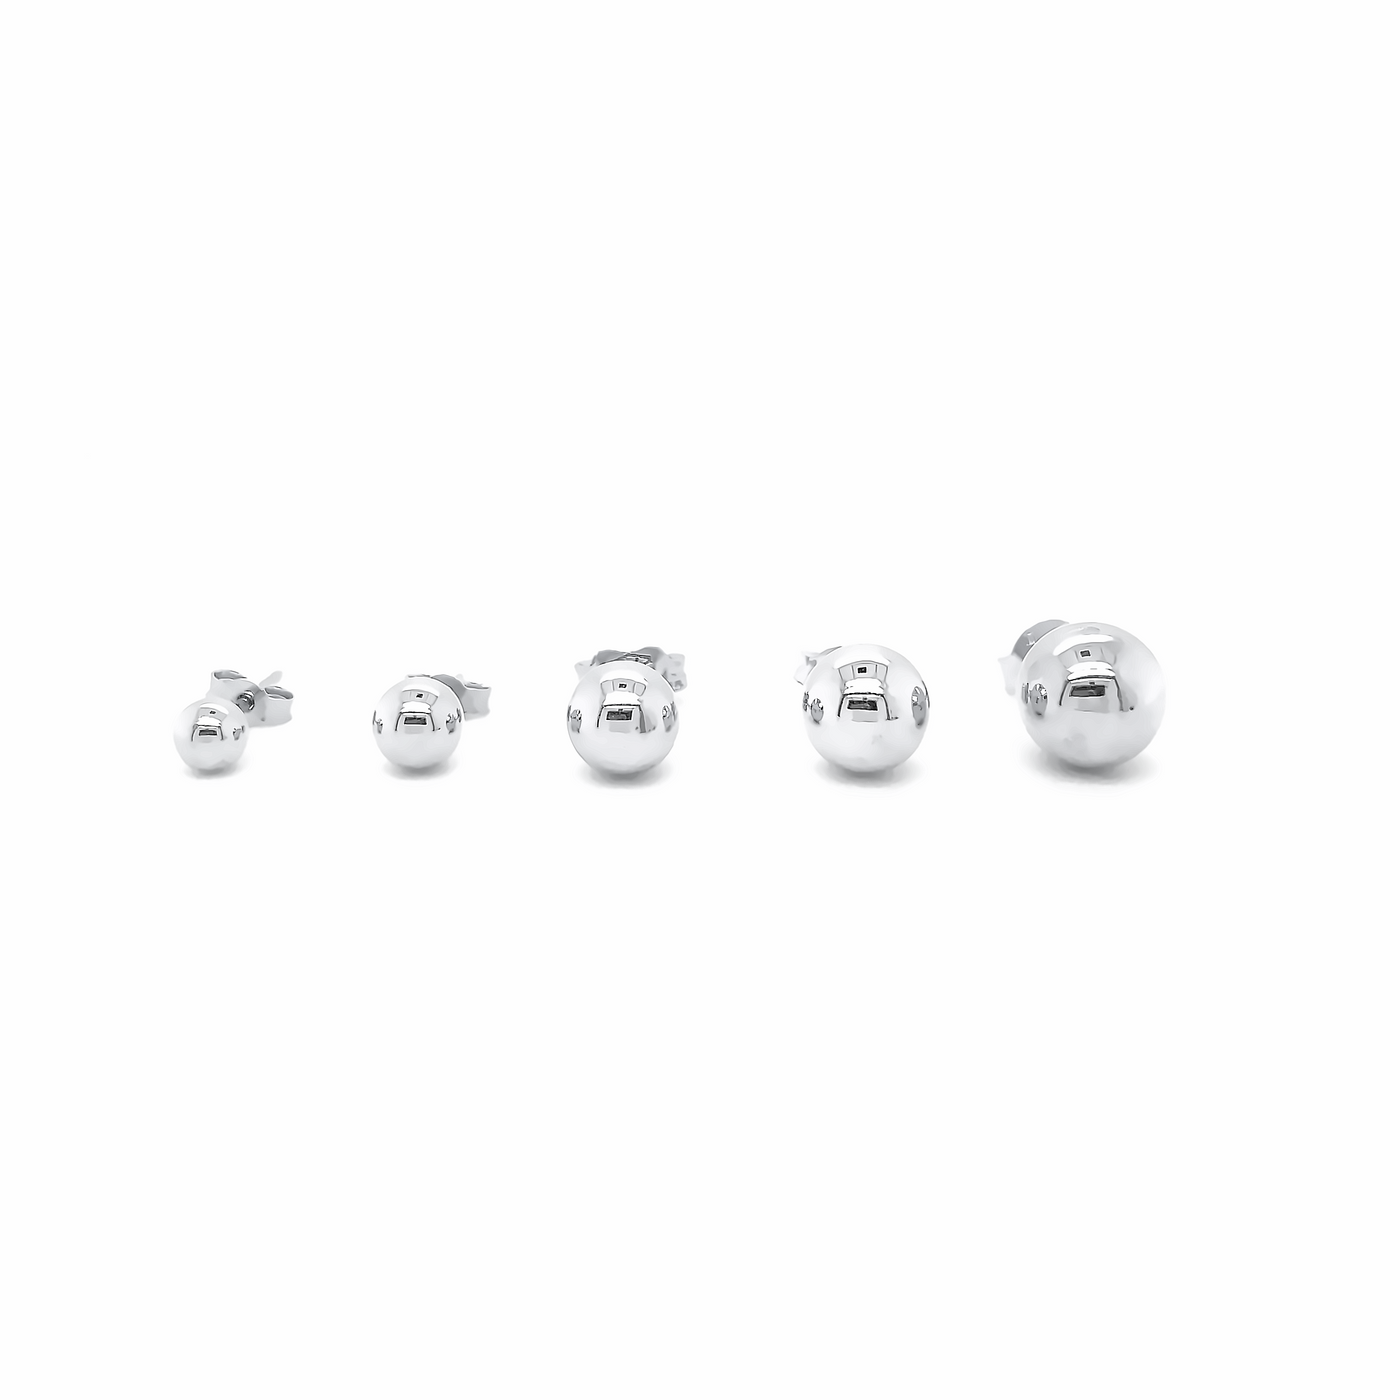 10 Karat White Gold Sphere Stud Earrings